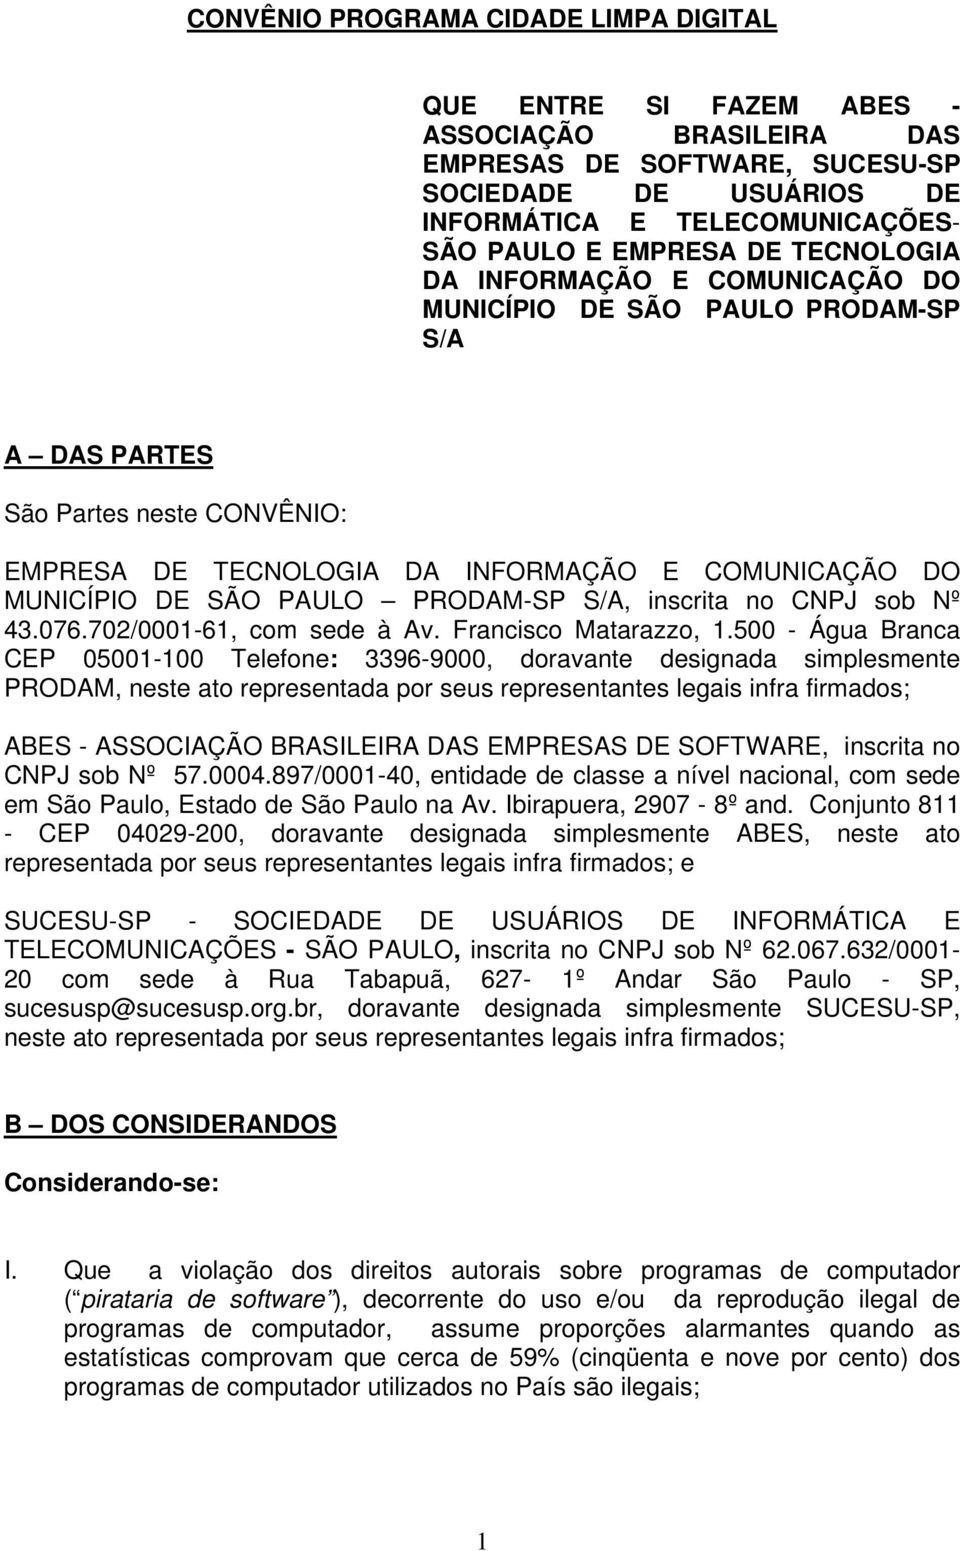 PRODAM-SP S/A, inscrita no CNPJ sob Nº 43.076.702/0001-61, com sede à Av. Francisco Matarazzo, 1.